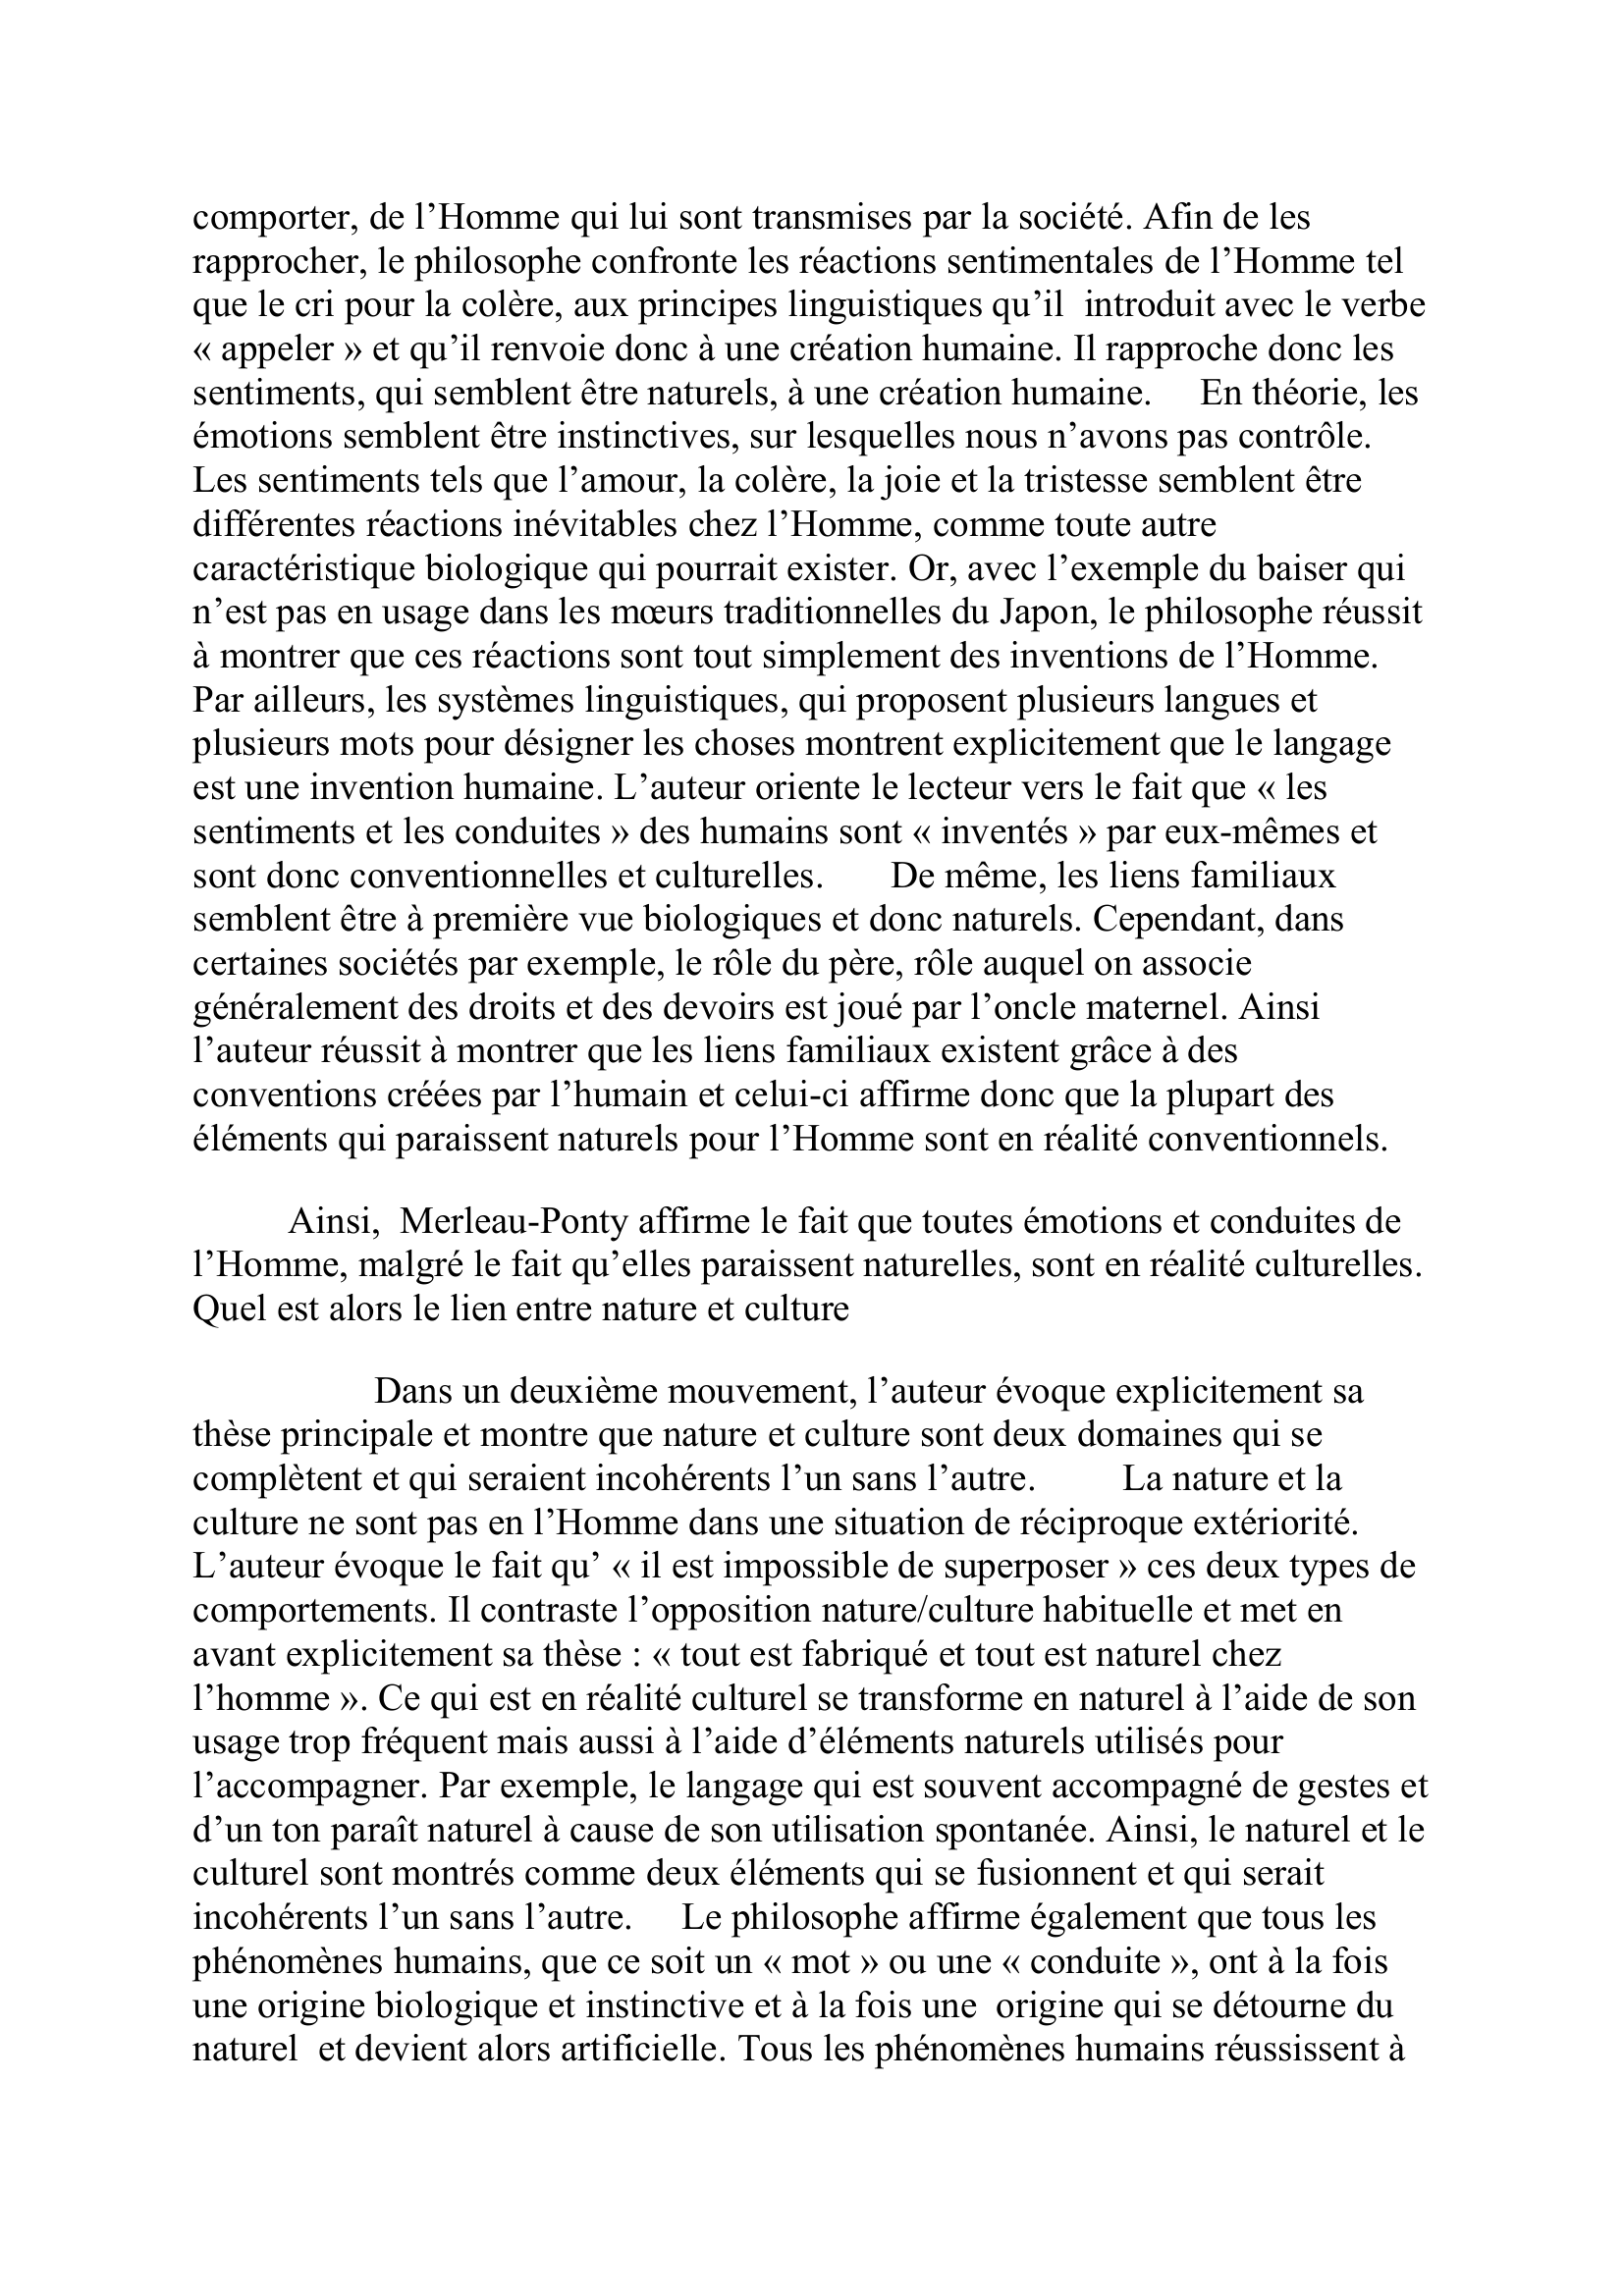 Prévisualisation du document commentaire de texte - Merleau Ponty